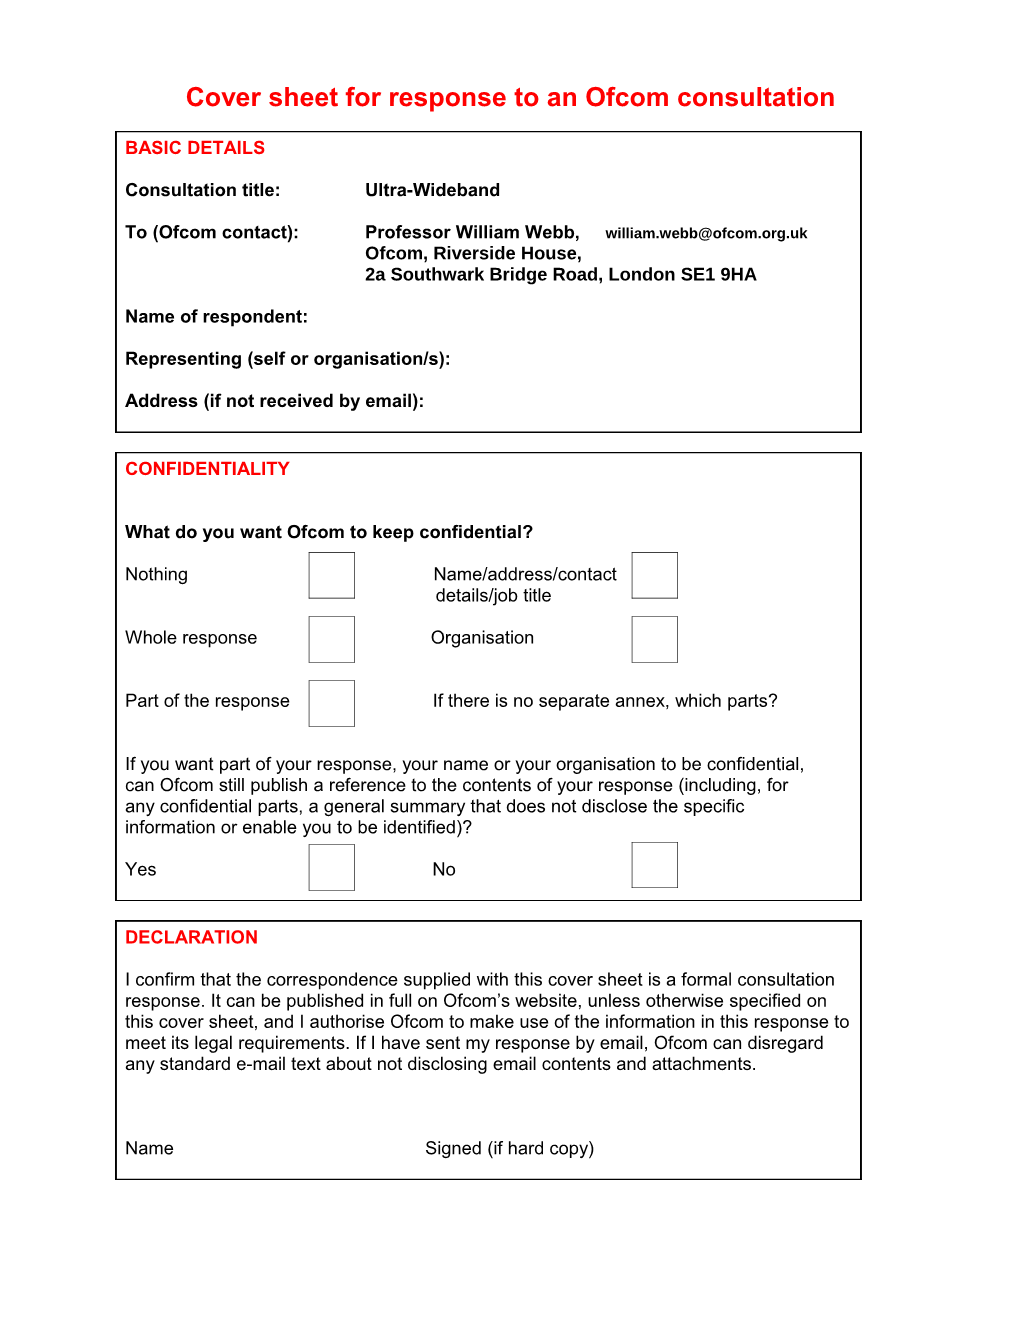 UWB Reply Sheet for Ofcom Consultation